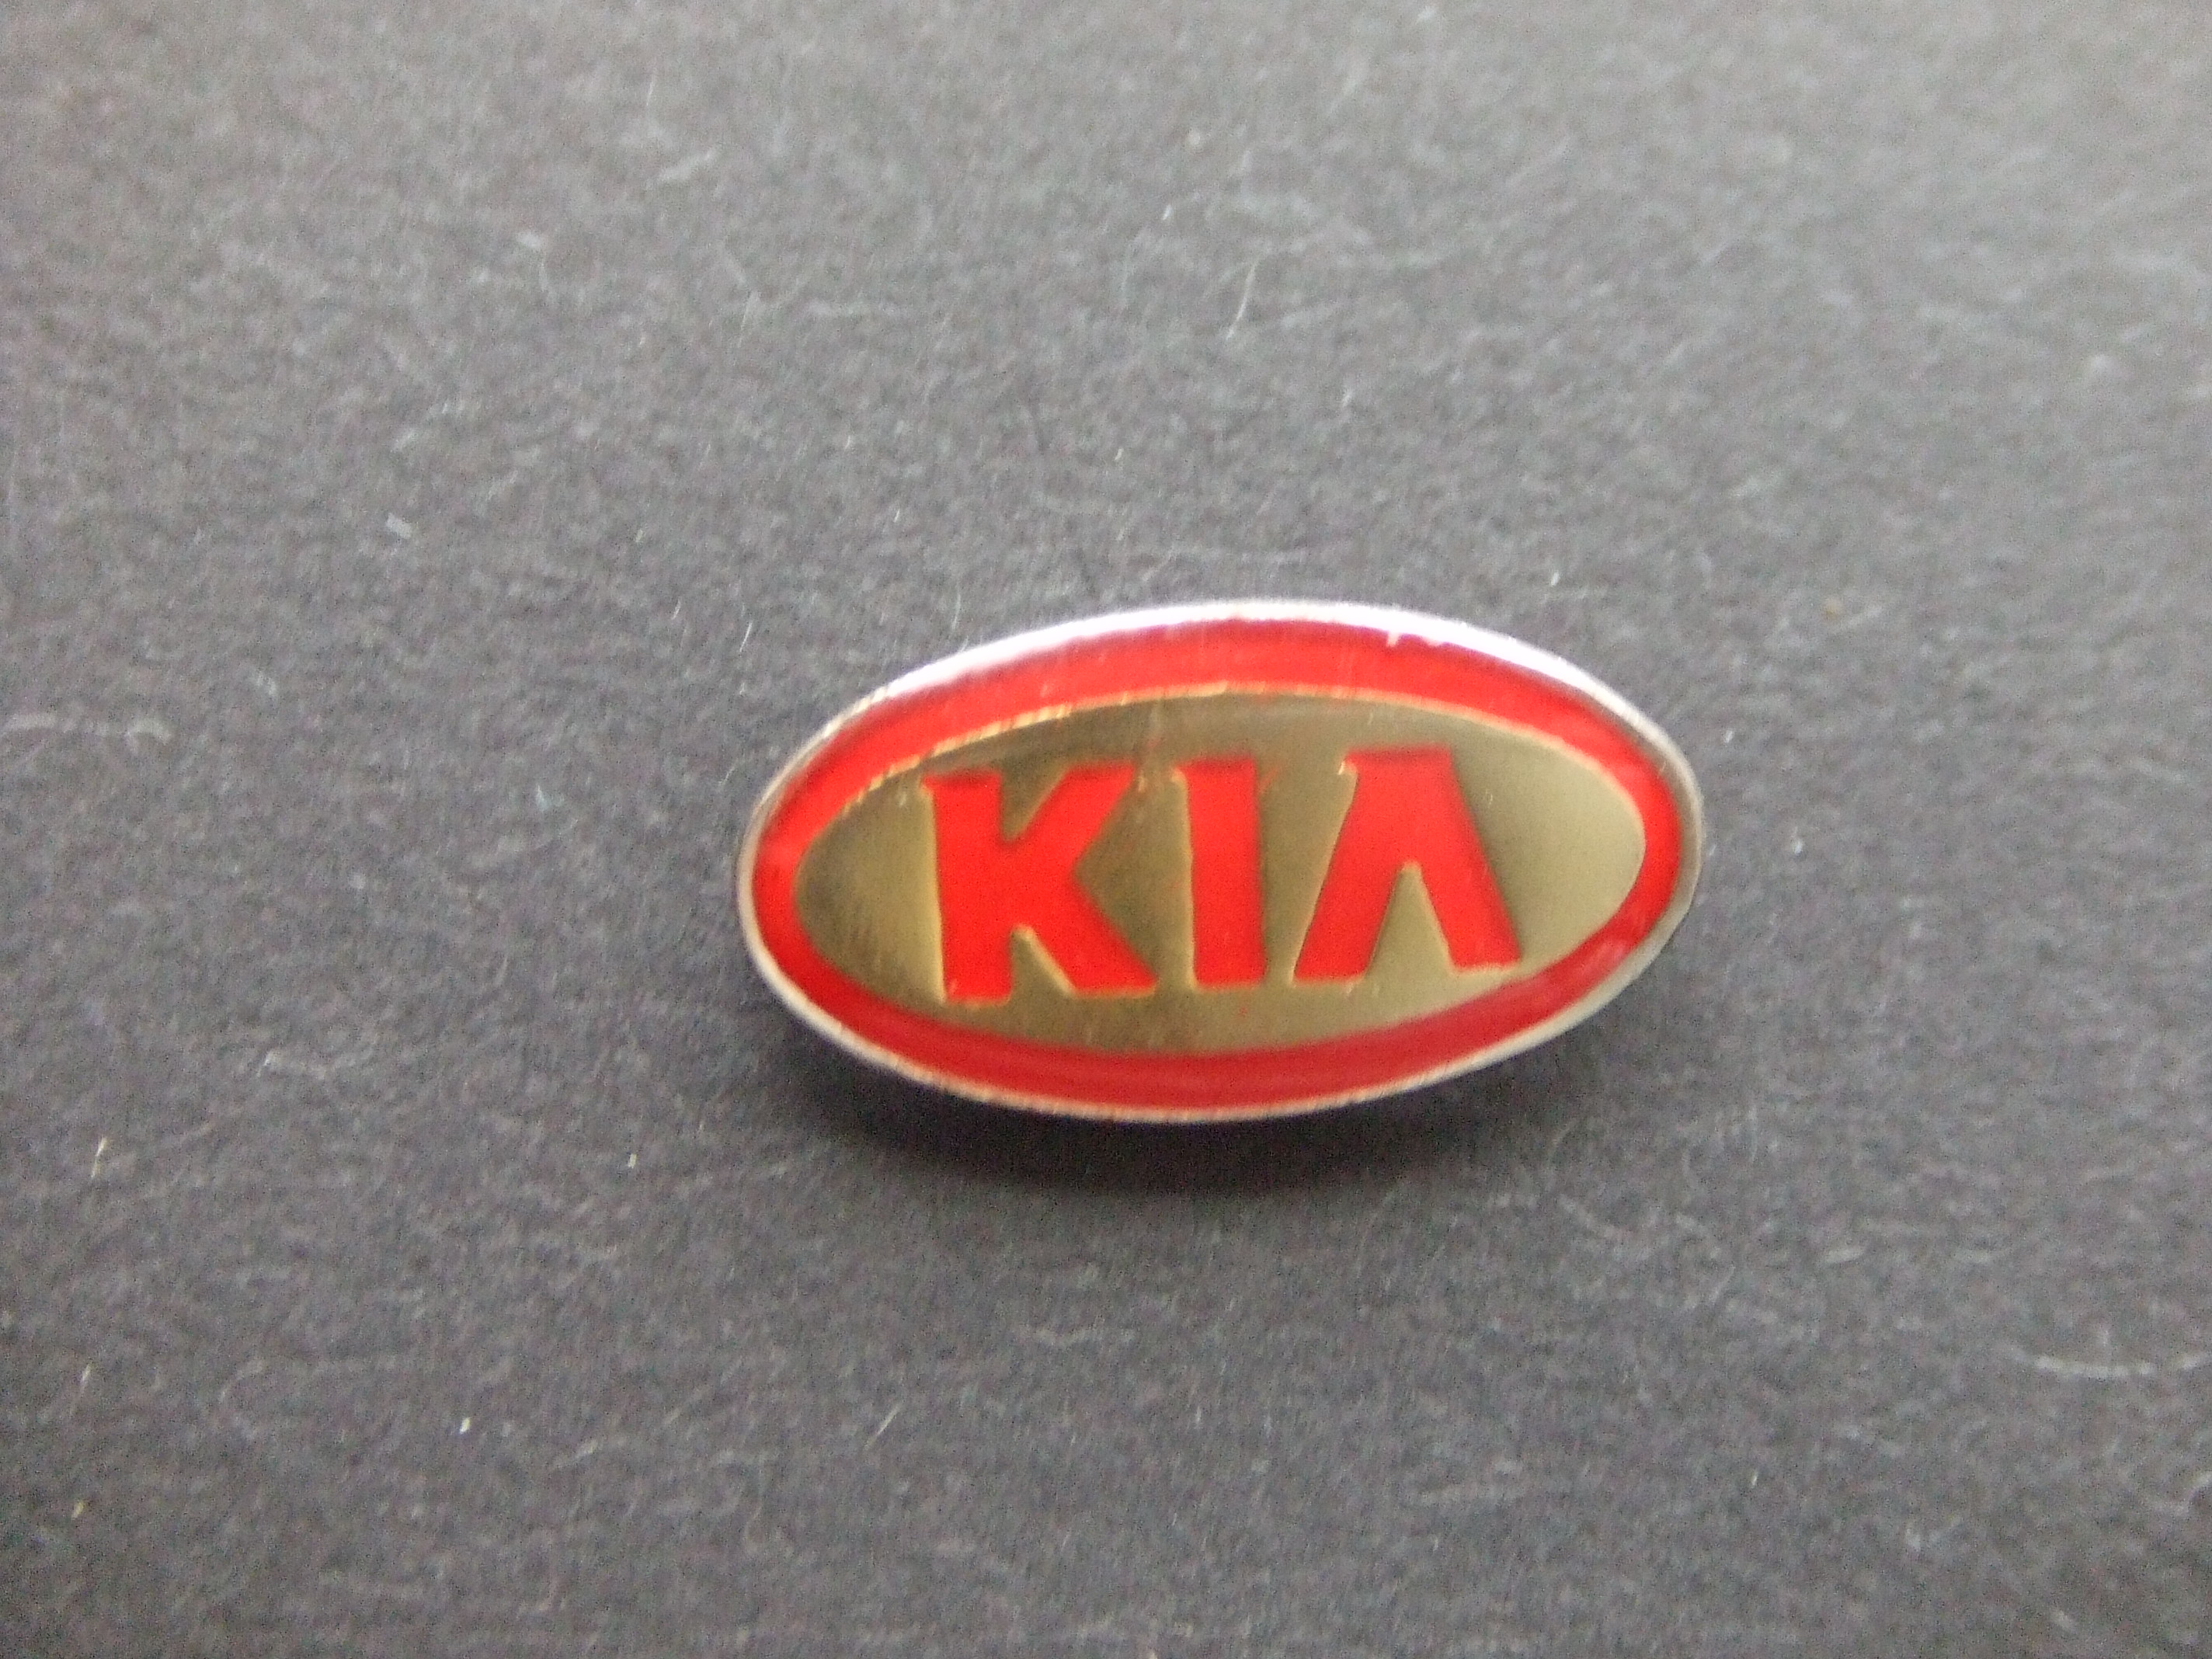 Kia Motors Zuid-Koreaans automerk, logo rode rand